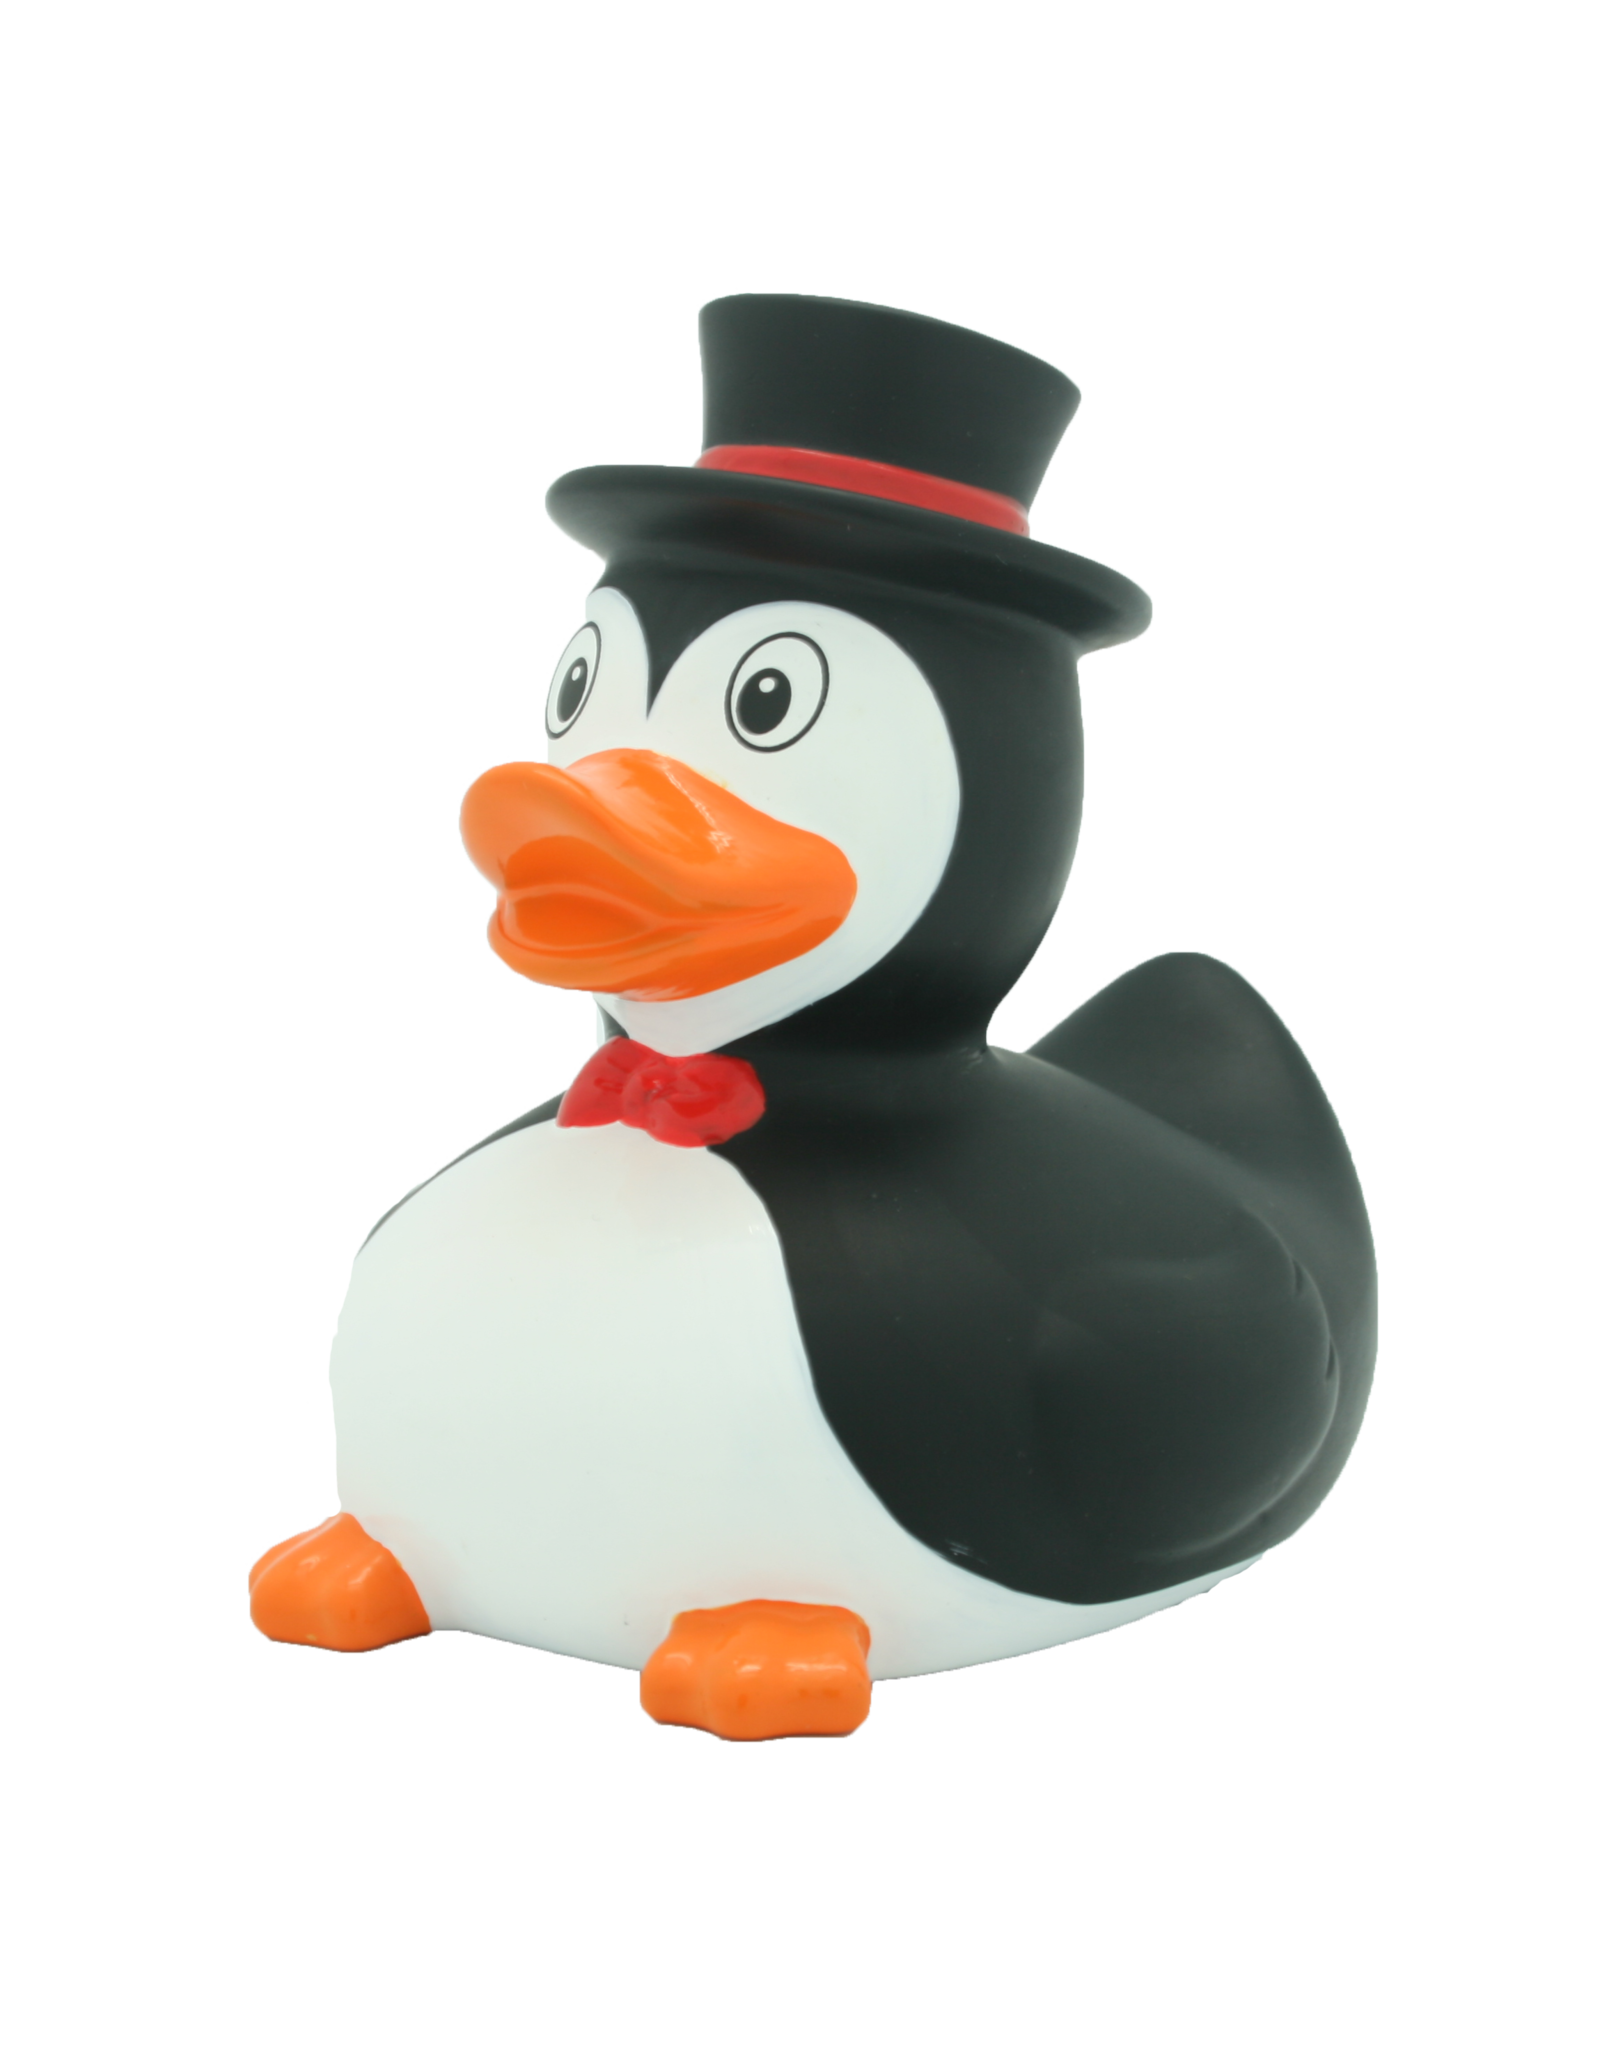 Lilalu Penguin Rubber Duck